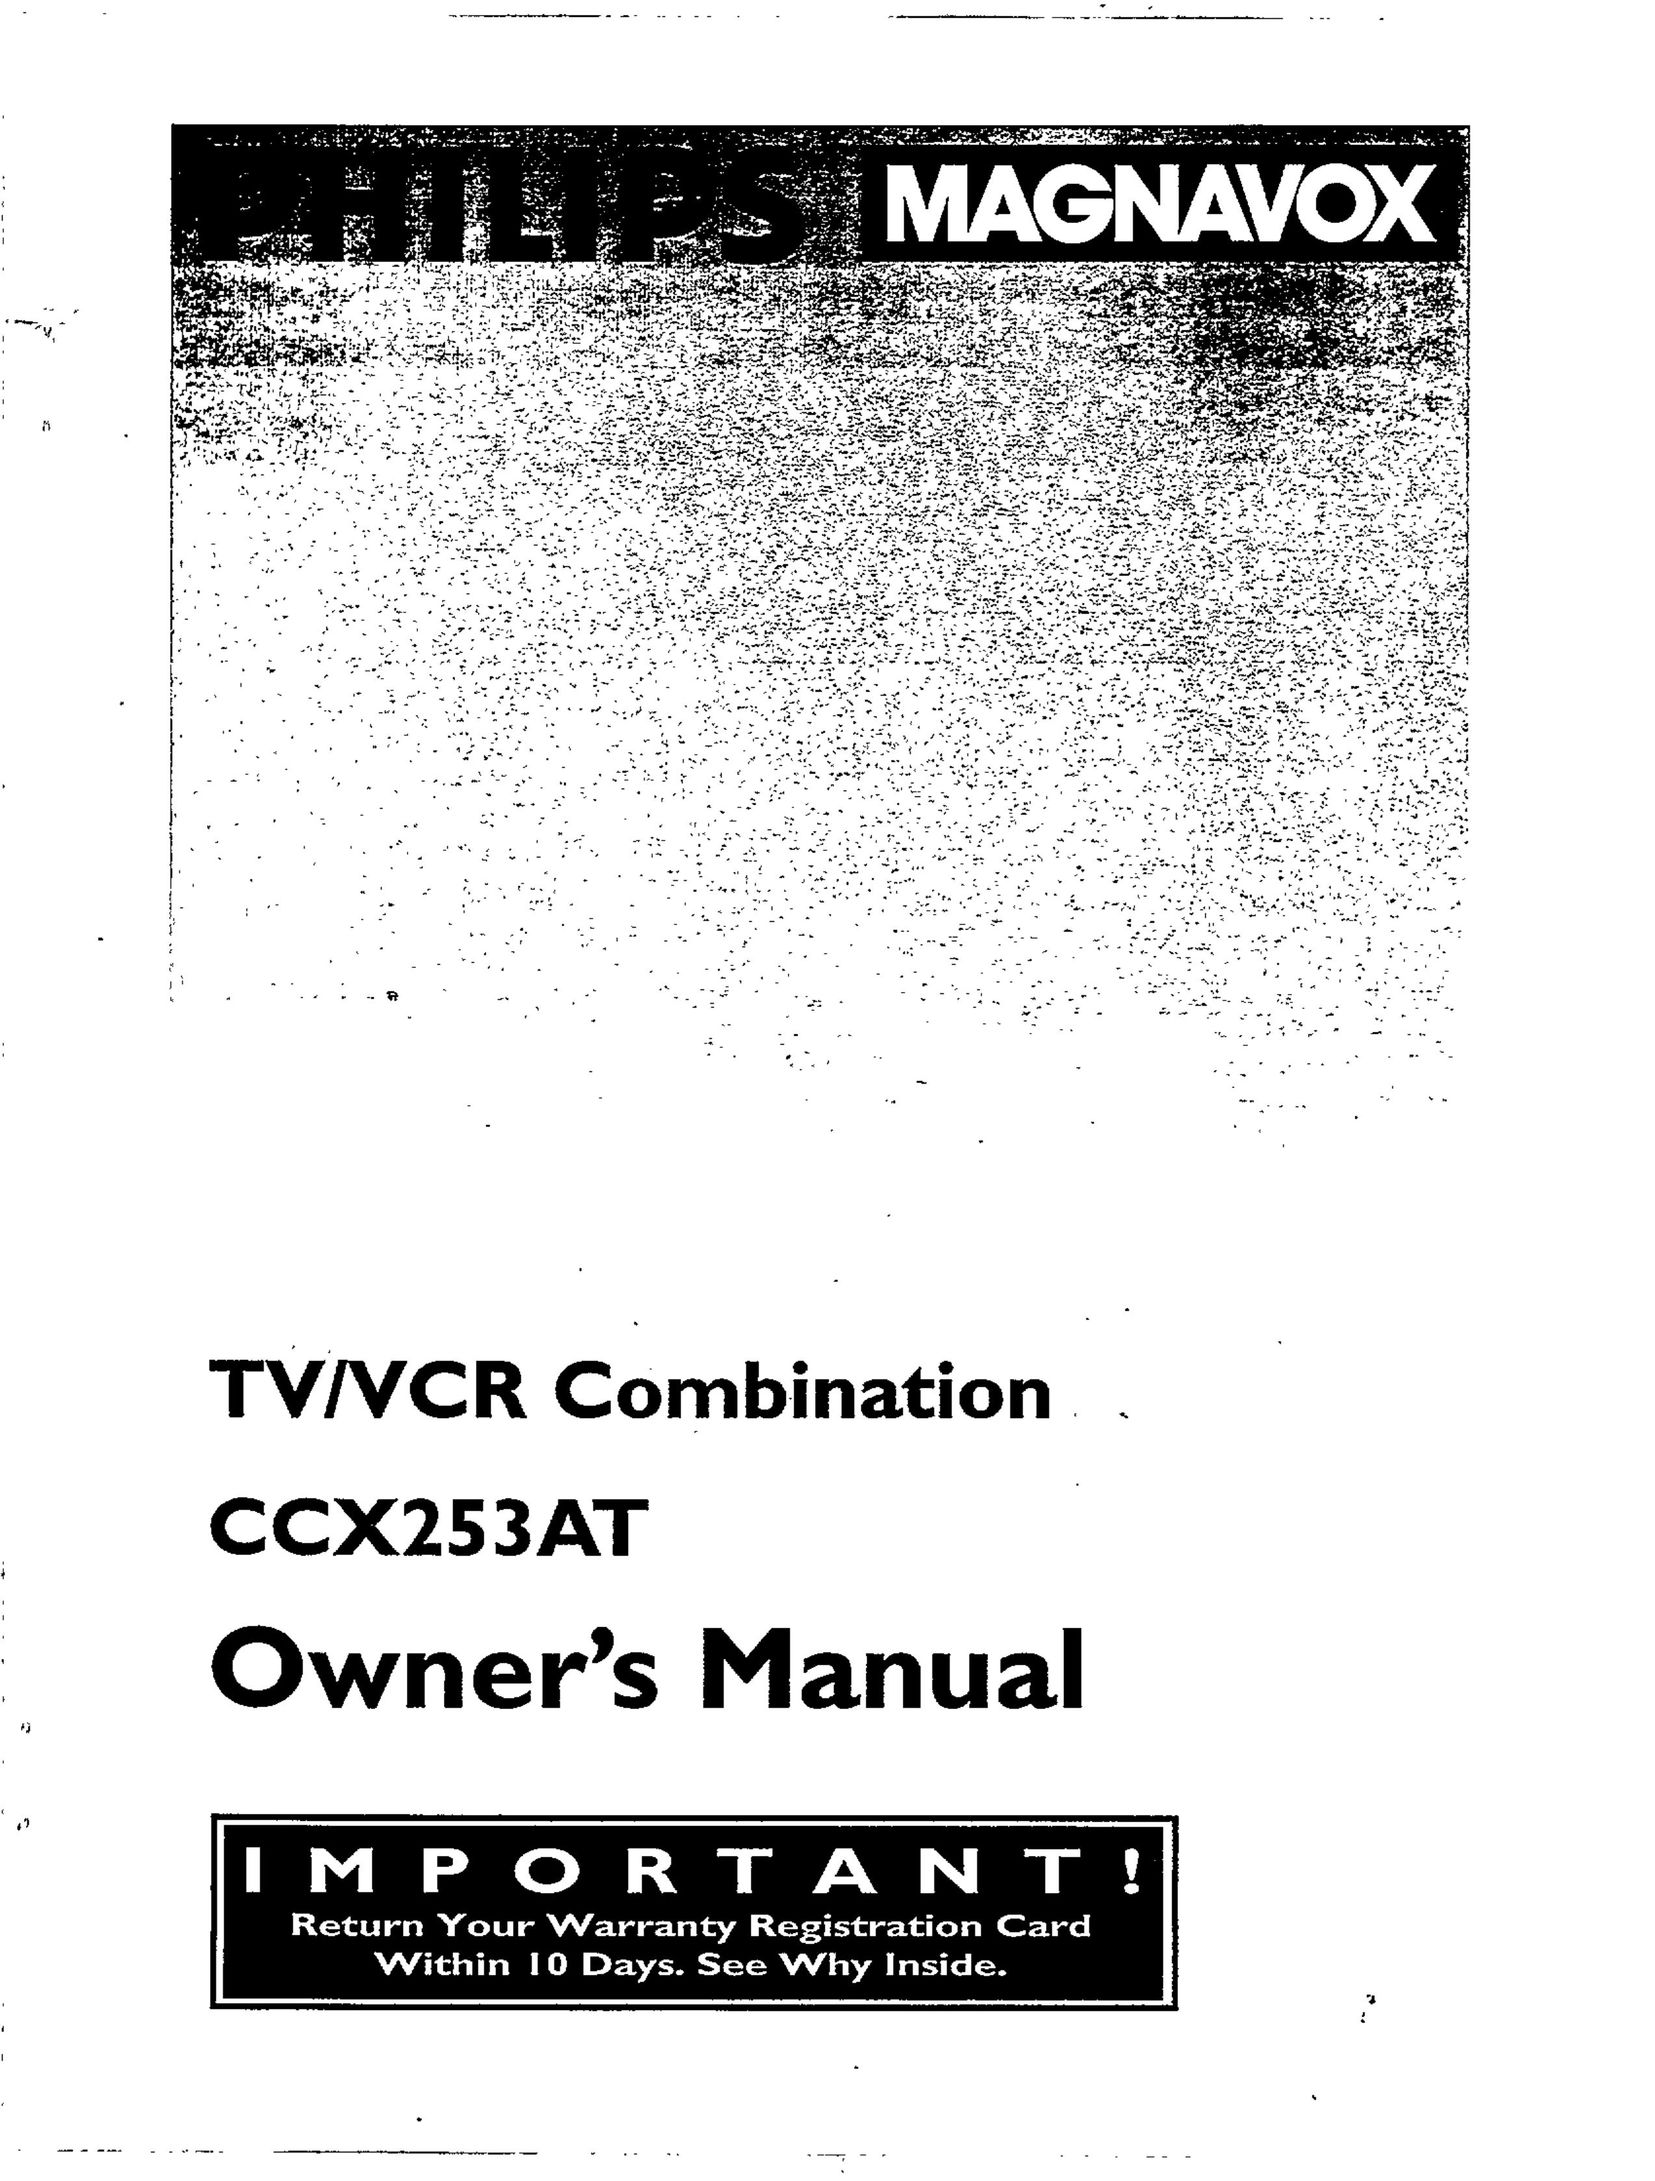 Magnavox CCX253AT TV VCR Combo User Manual